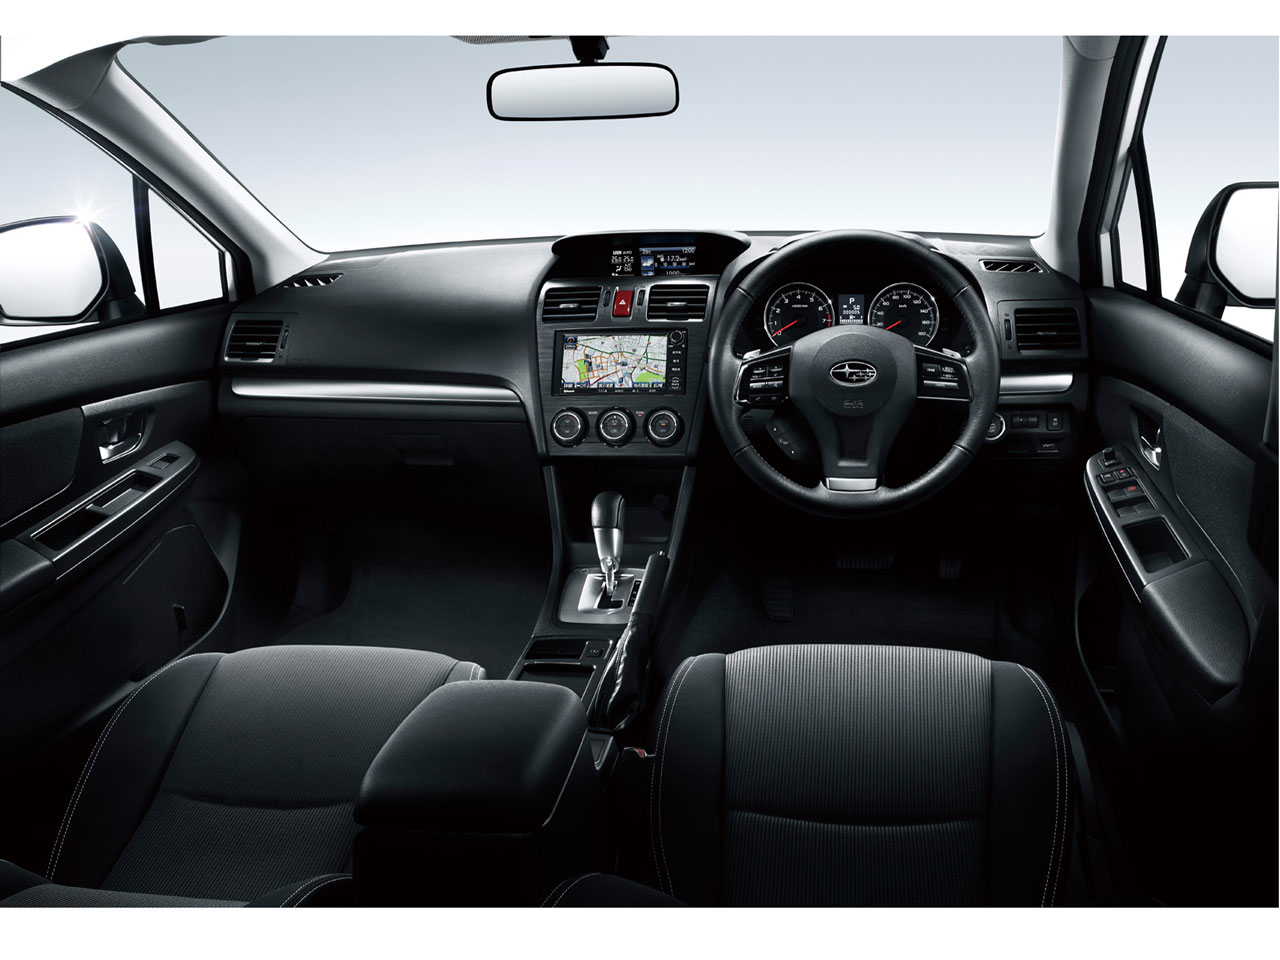 スバル インプレッサ スポーツ 11年モデル 1 6i L 4wd 価格 性能 装備 オプション 15年10月14日発売 価格 Com